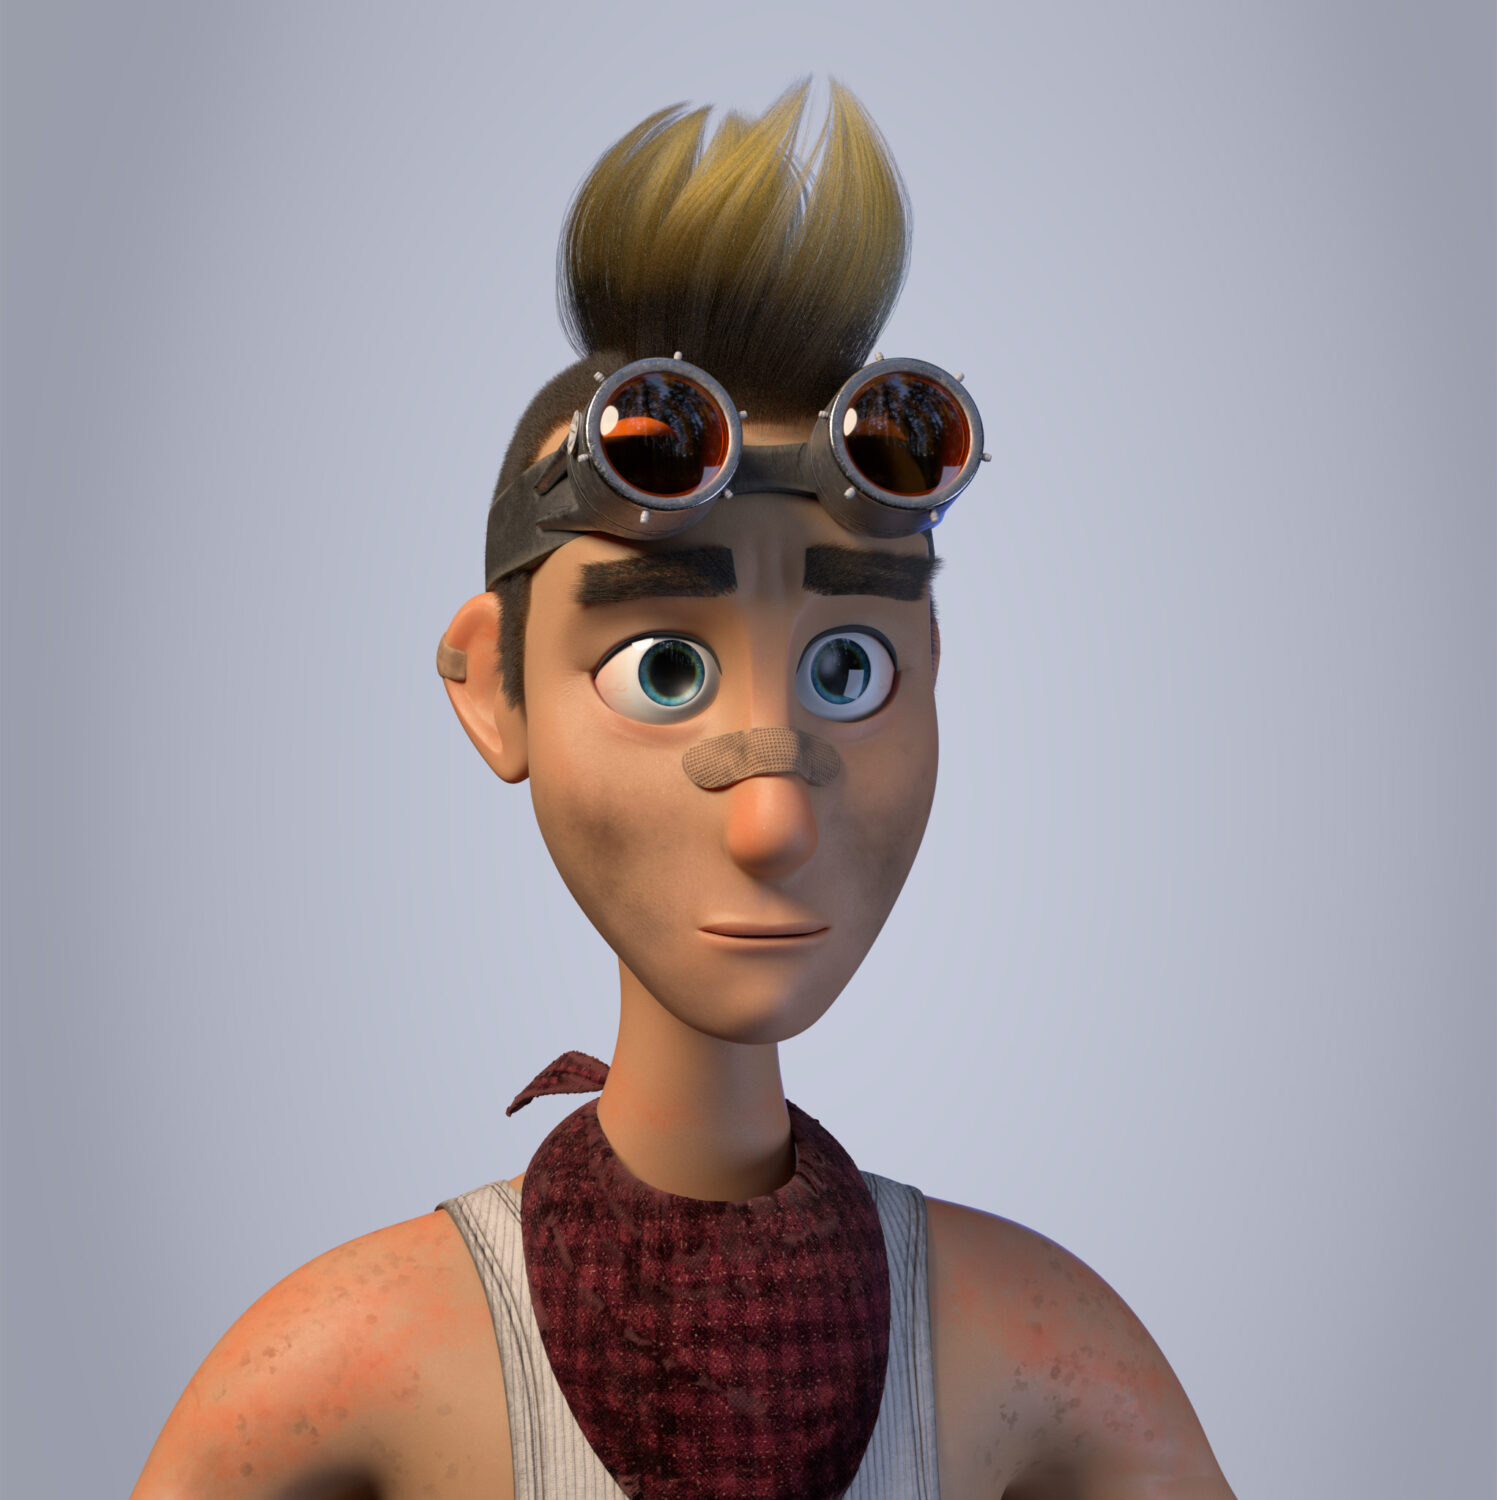 "Joe" character character